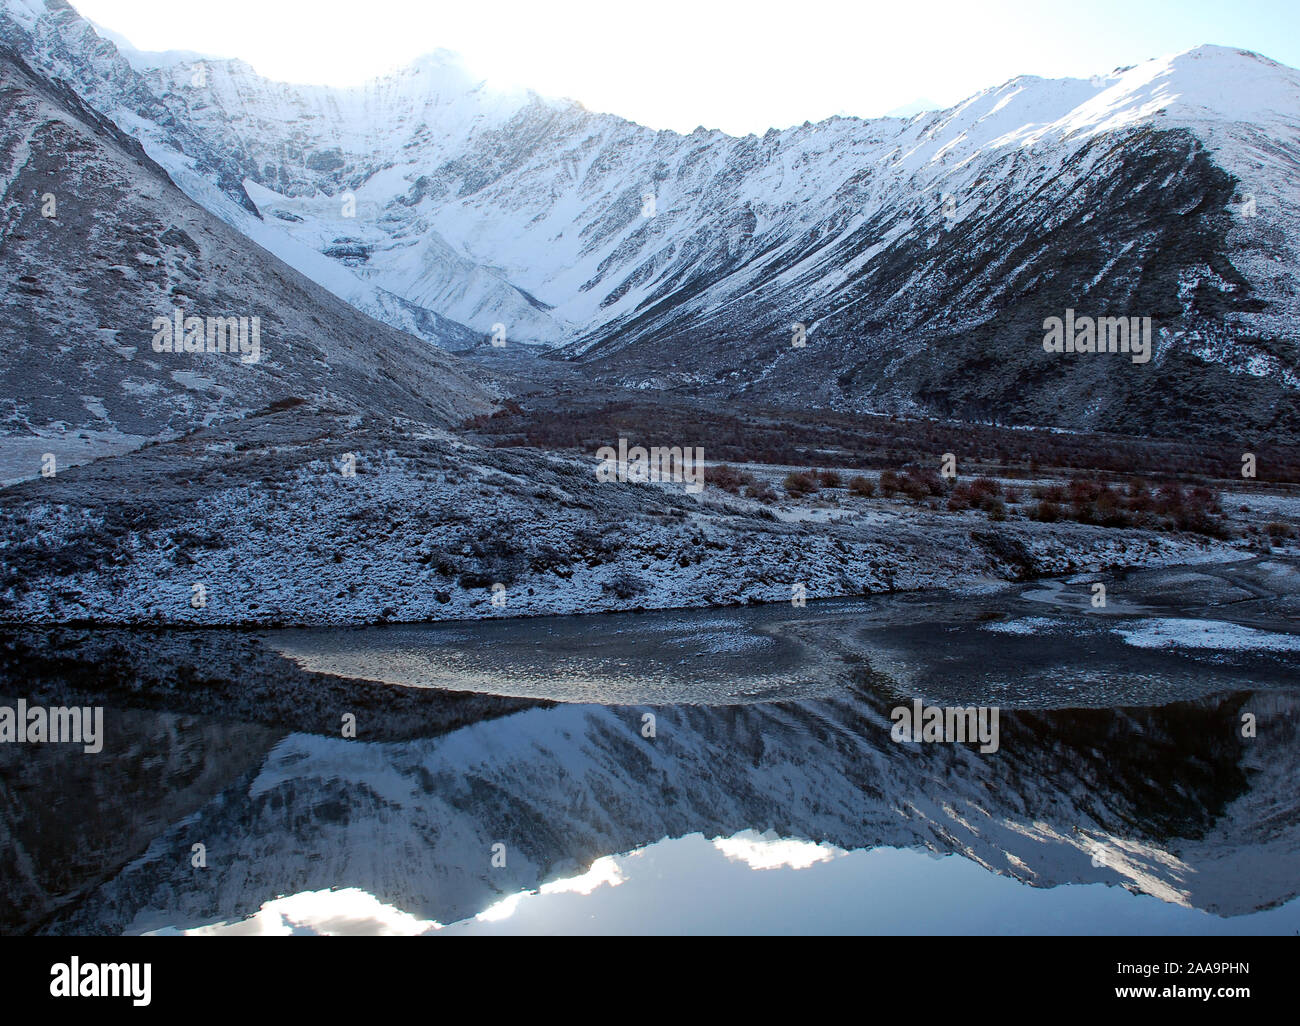 Un petit glacier est reflétée dans les eaux d'un lac de montagne dans les montagnes du Sichuan Daxueshan Banque D'Images